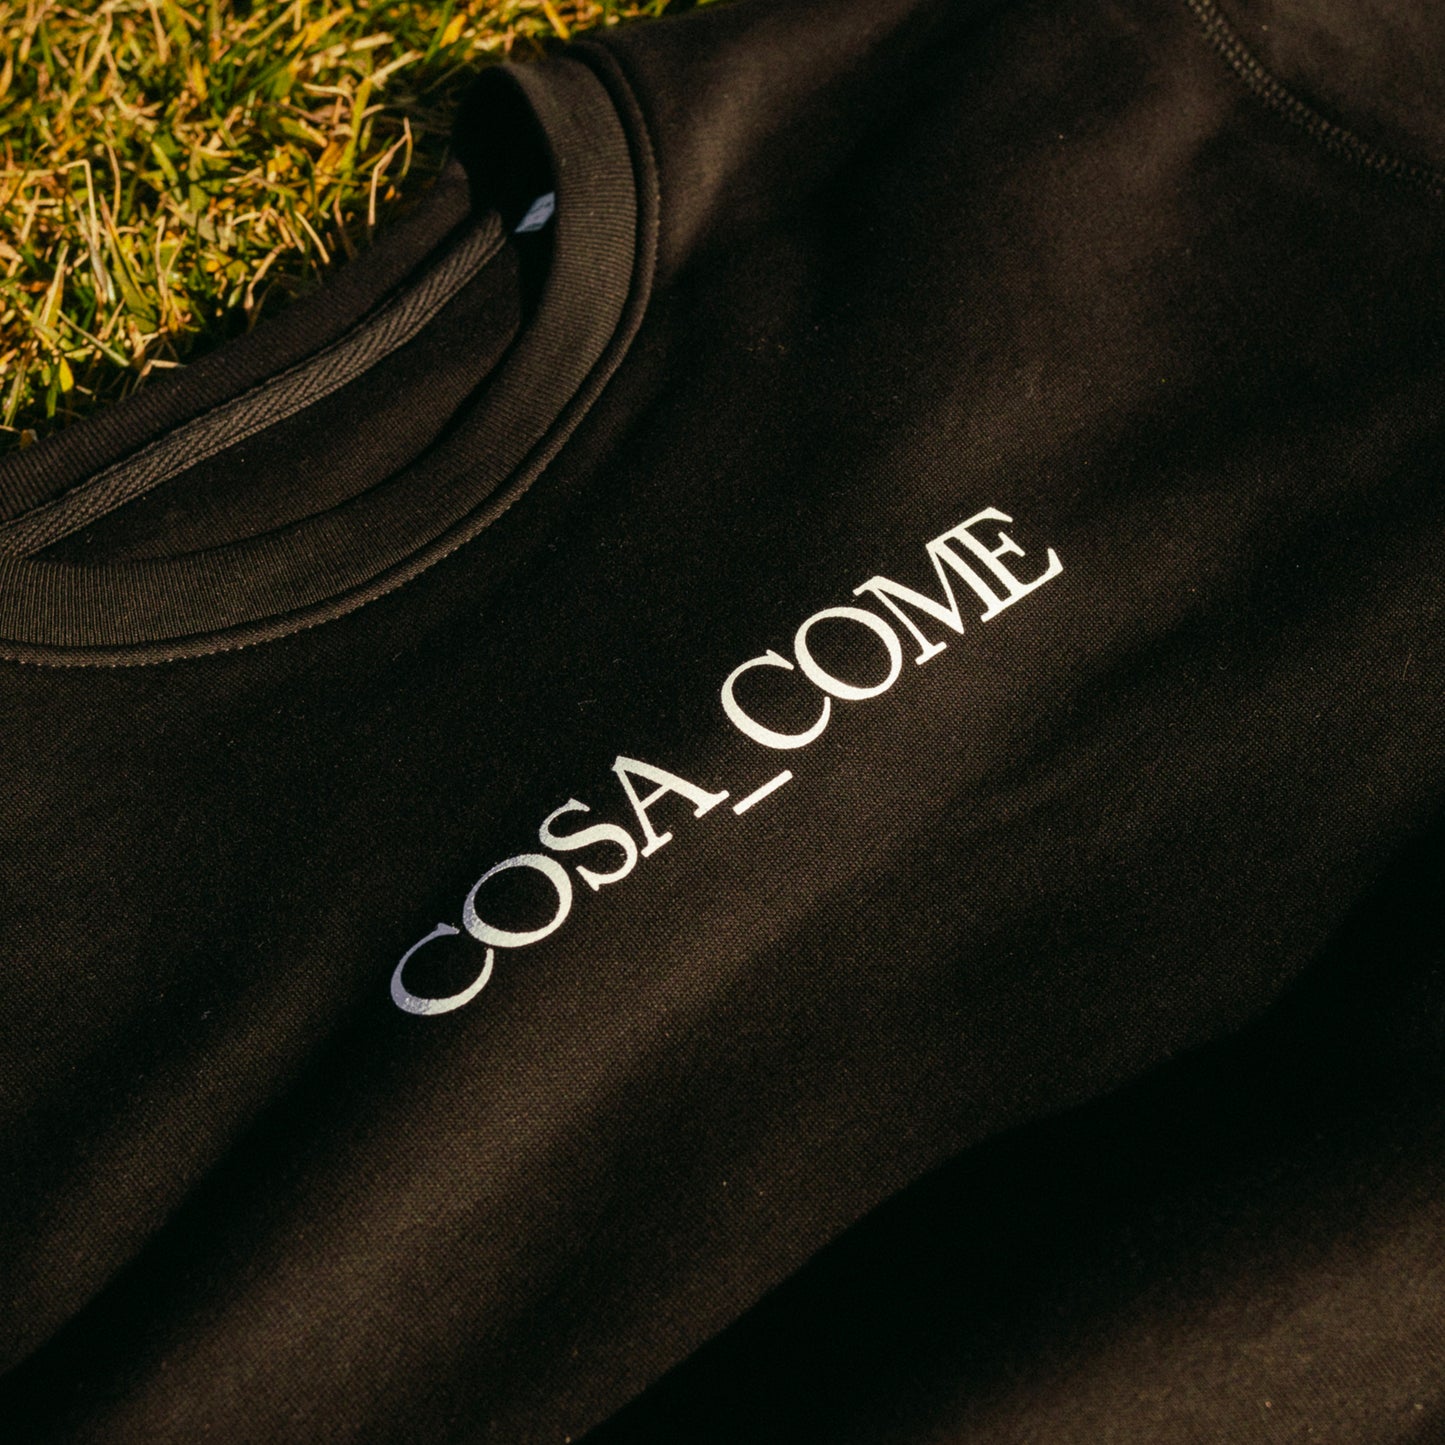 COMA_COSE / COSA COME SWEATSHIRT [Limited Edition]